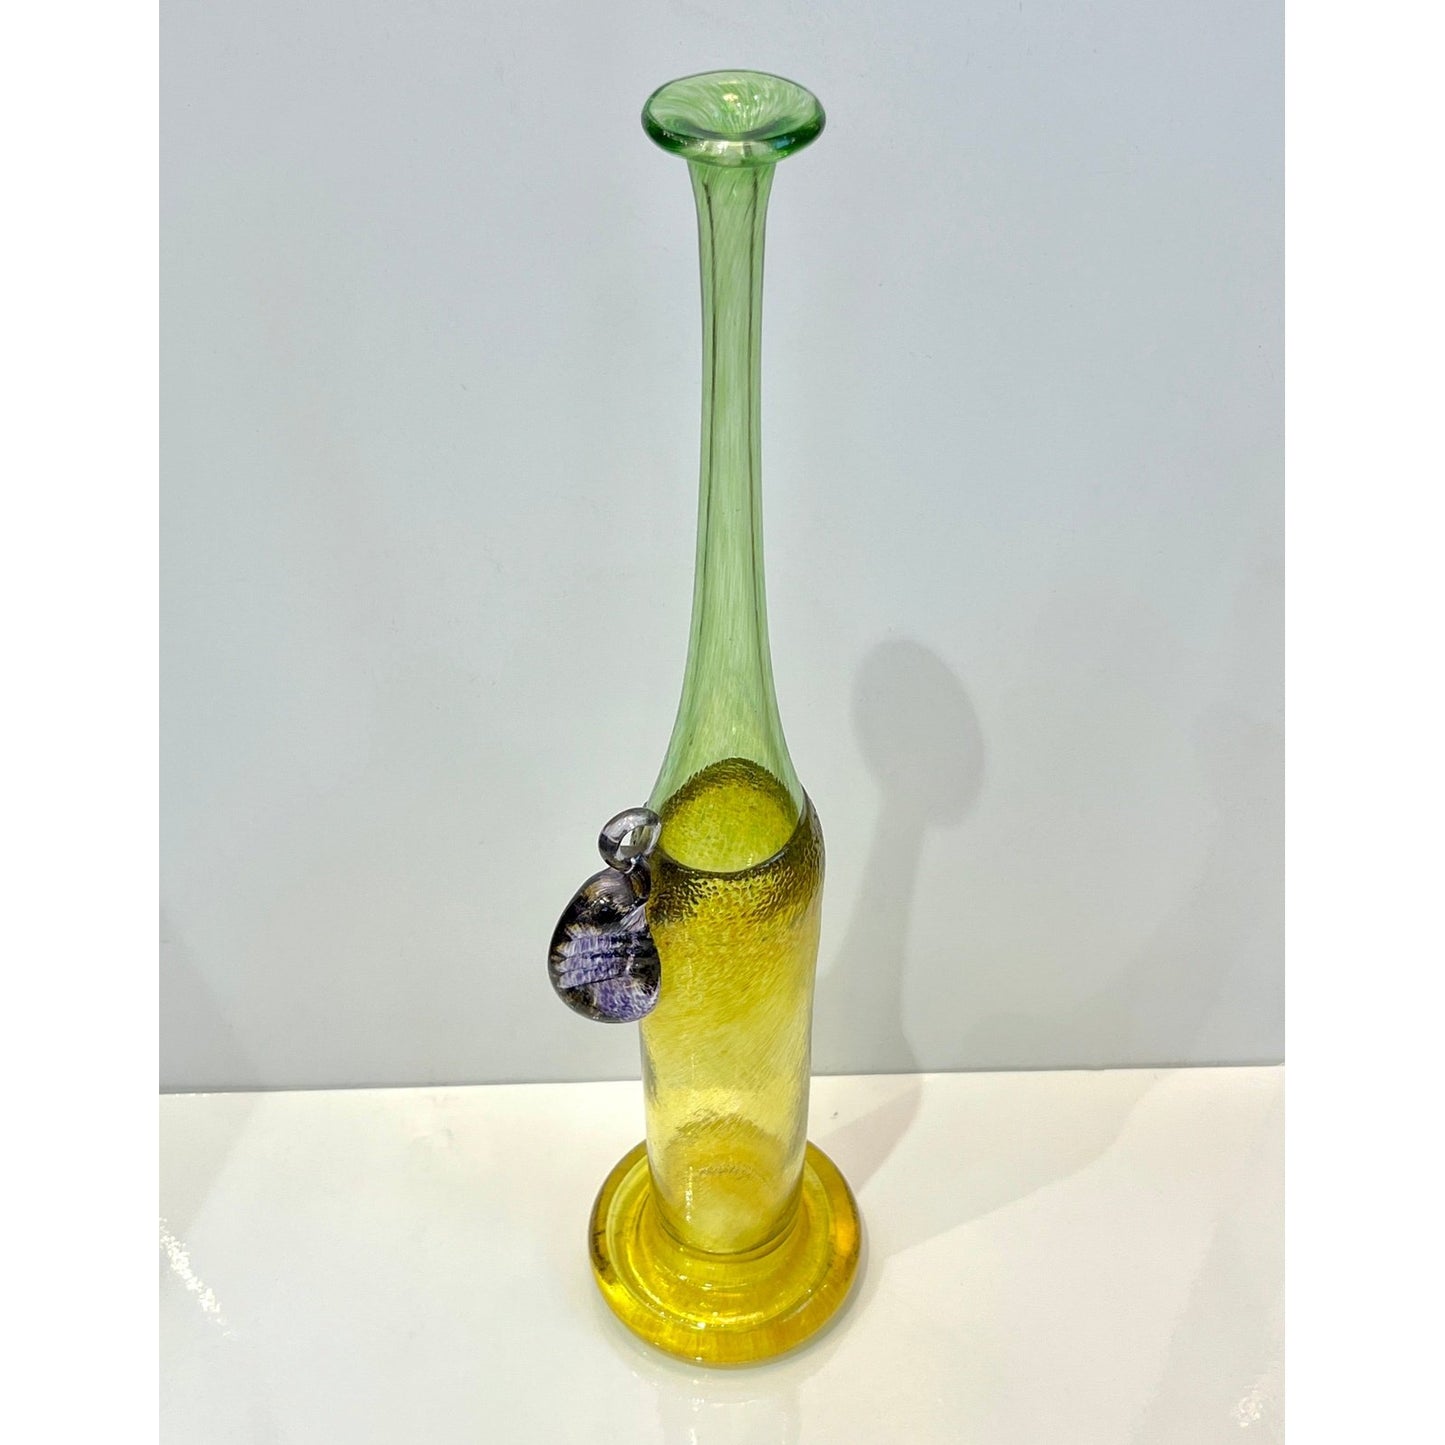 1970s Bertil Vallien Swedish Purple Green Yellow Art Glass Vase for Kosta Boda